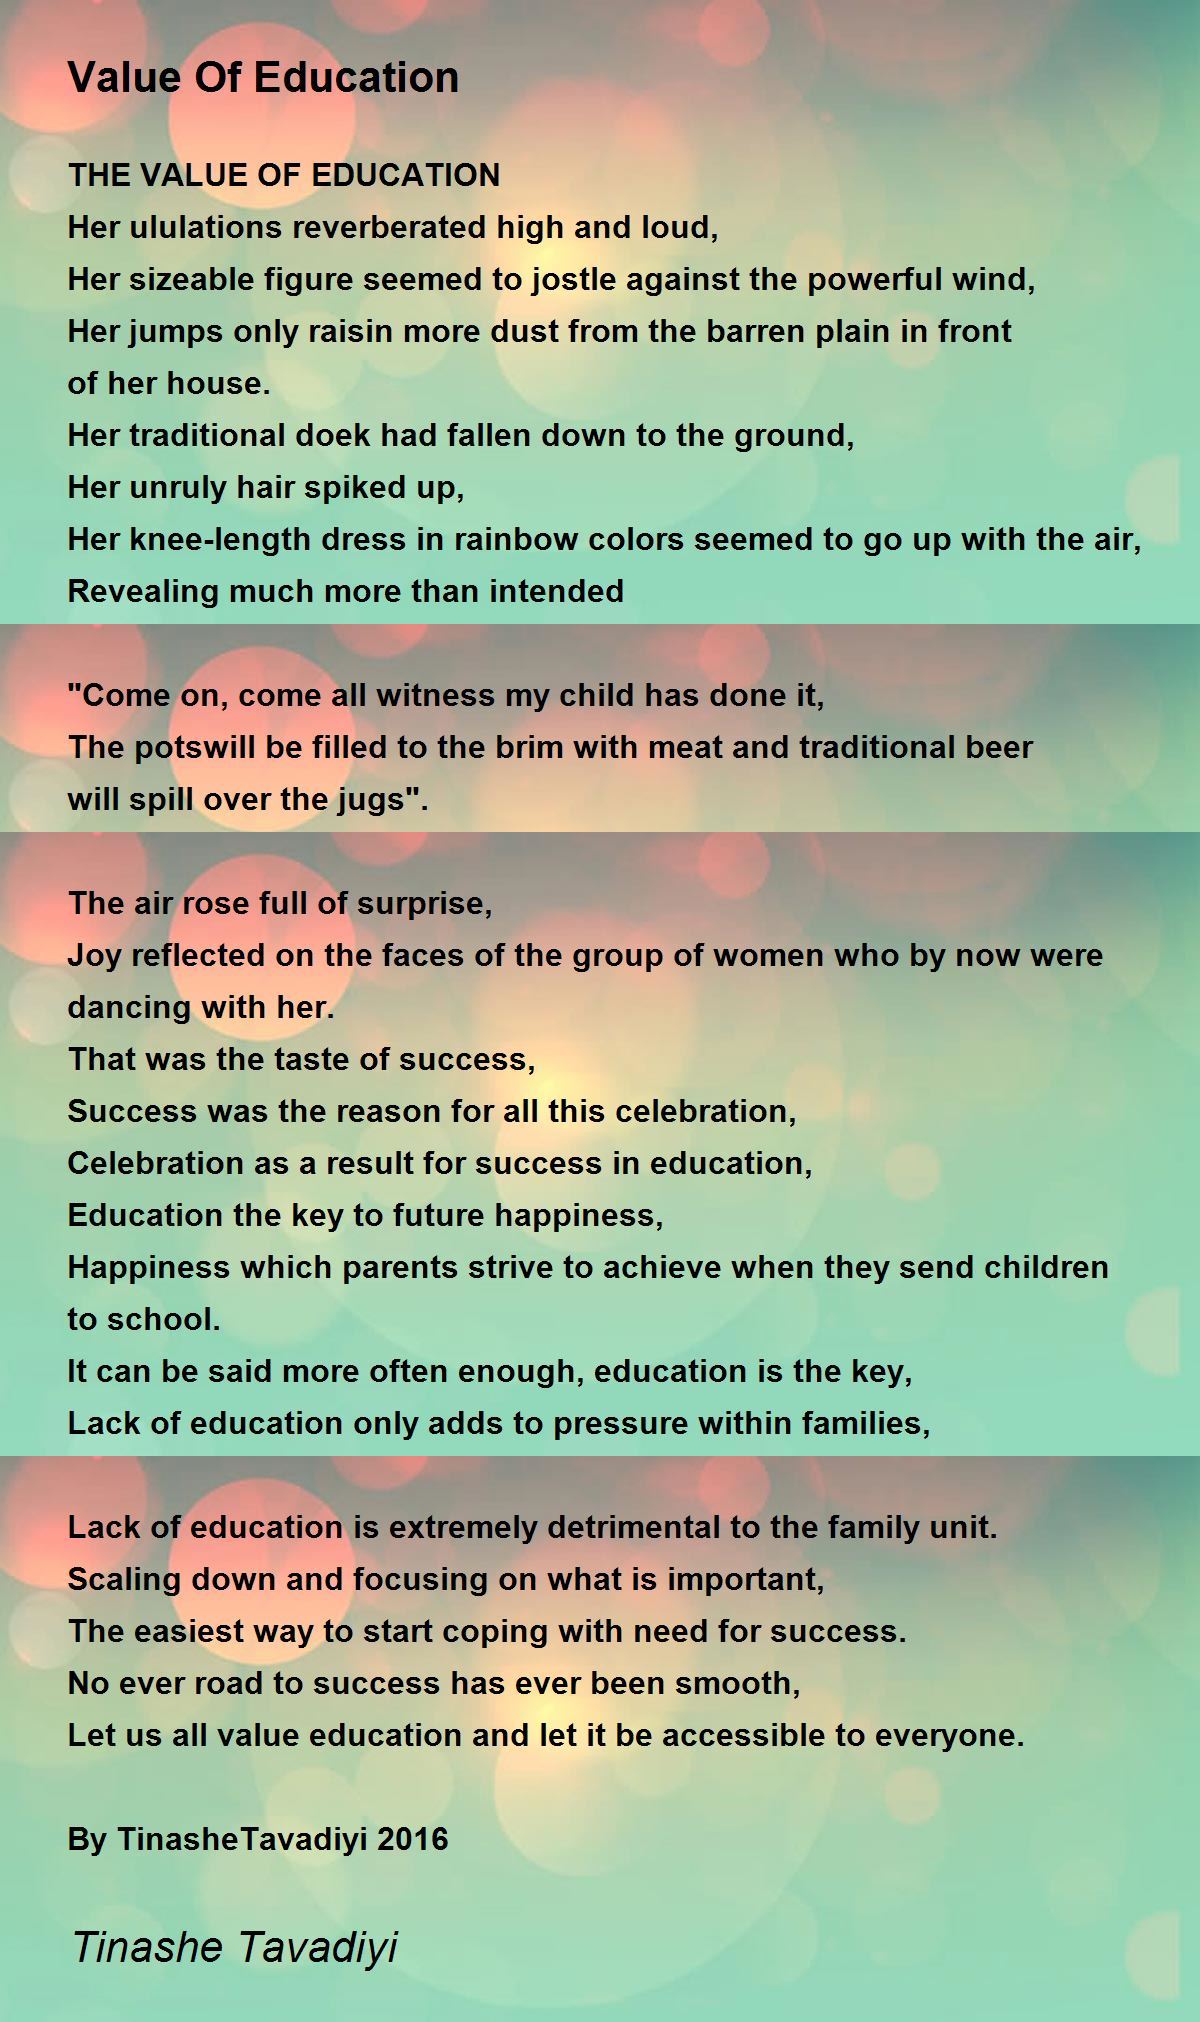 Value Of Education by Tinashe Tavadiyi - Value Of Education Poem